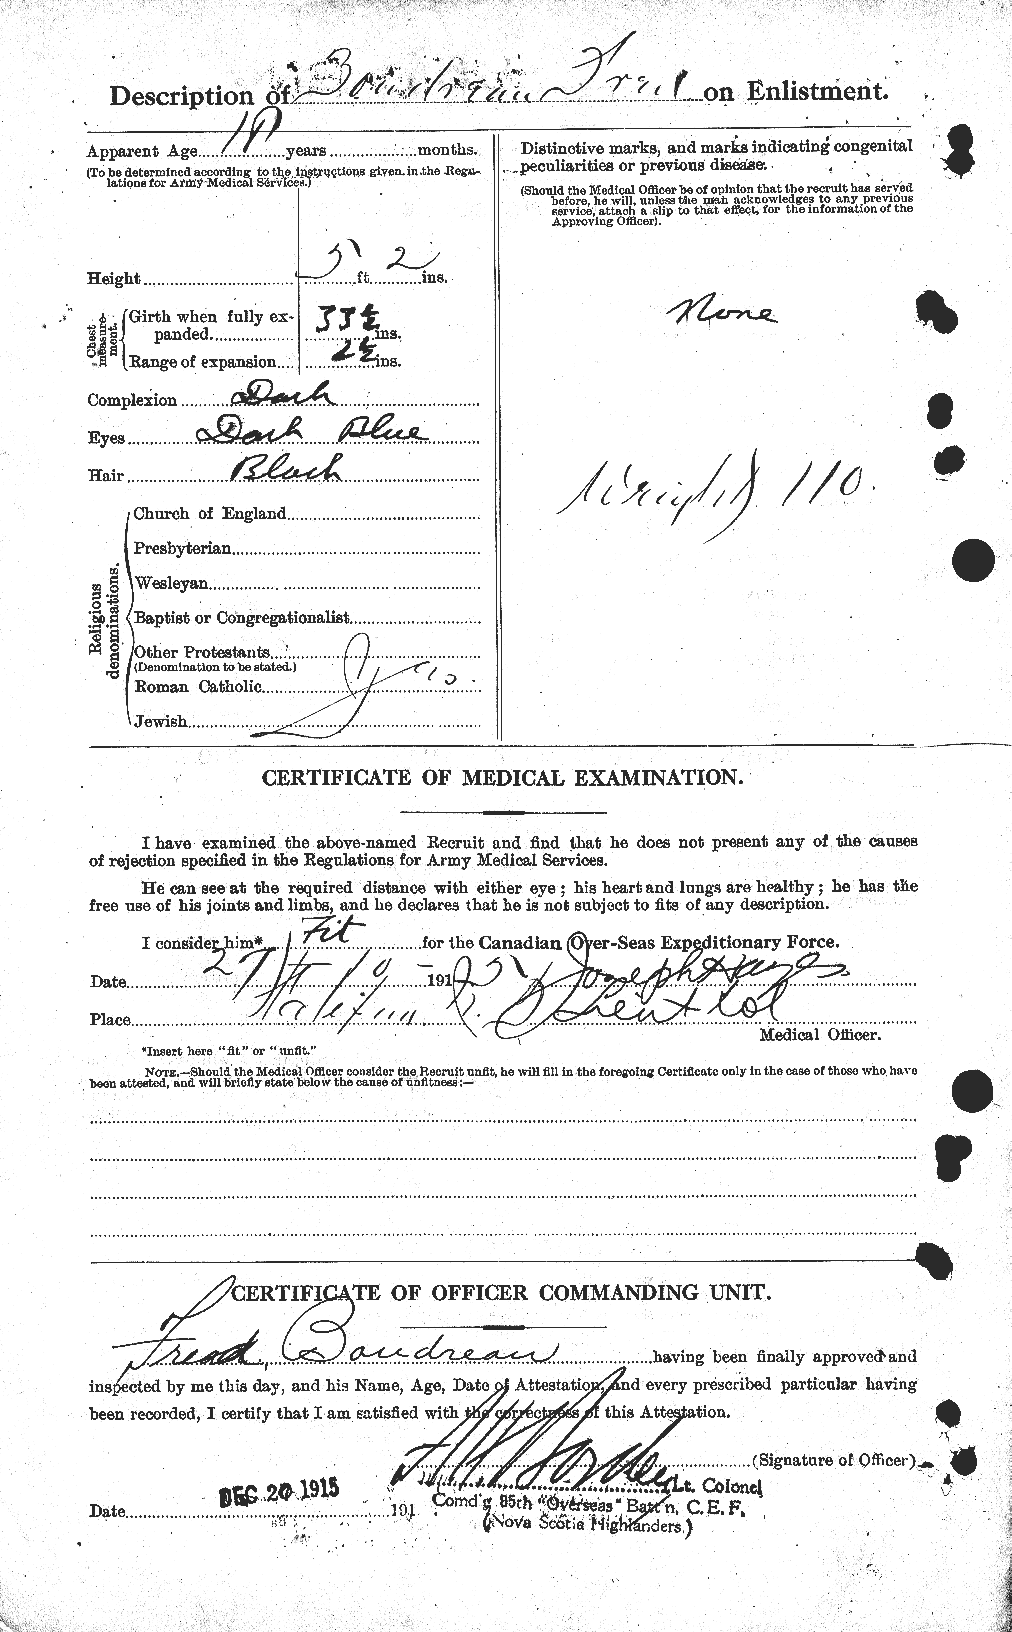 Dossiers du Personnel de la Première Guerre mondiale - CEC 255720b